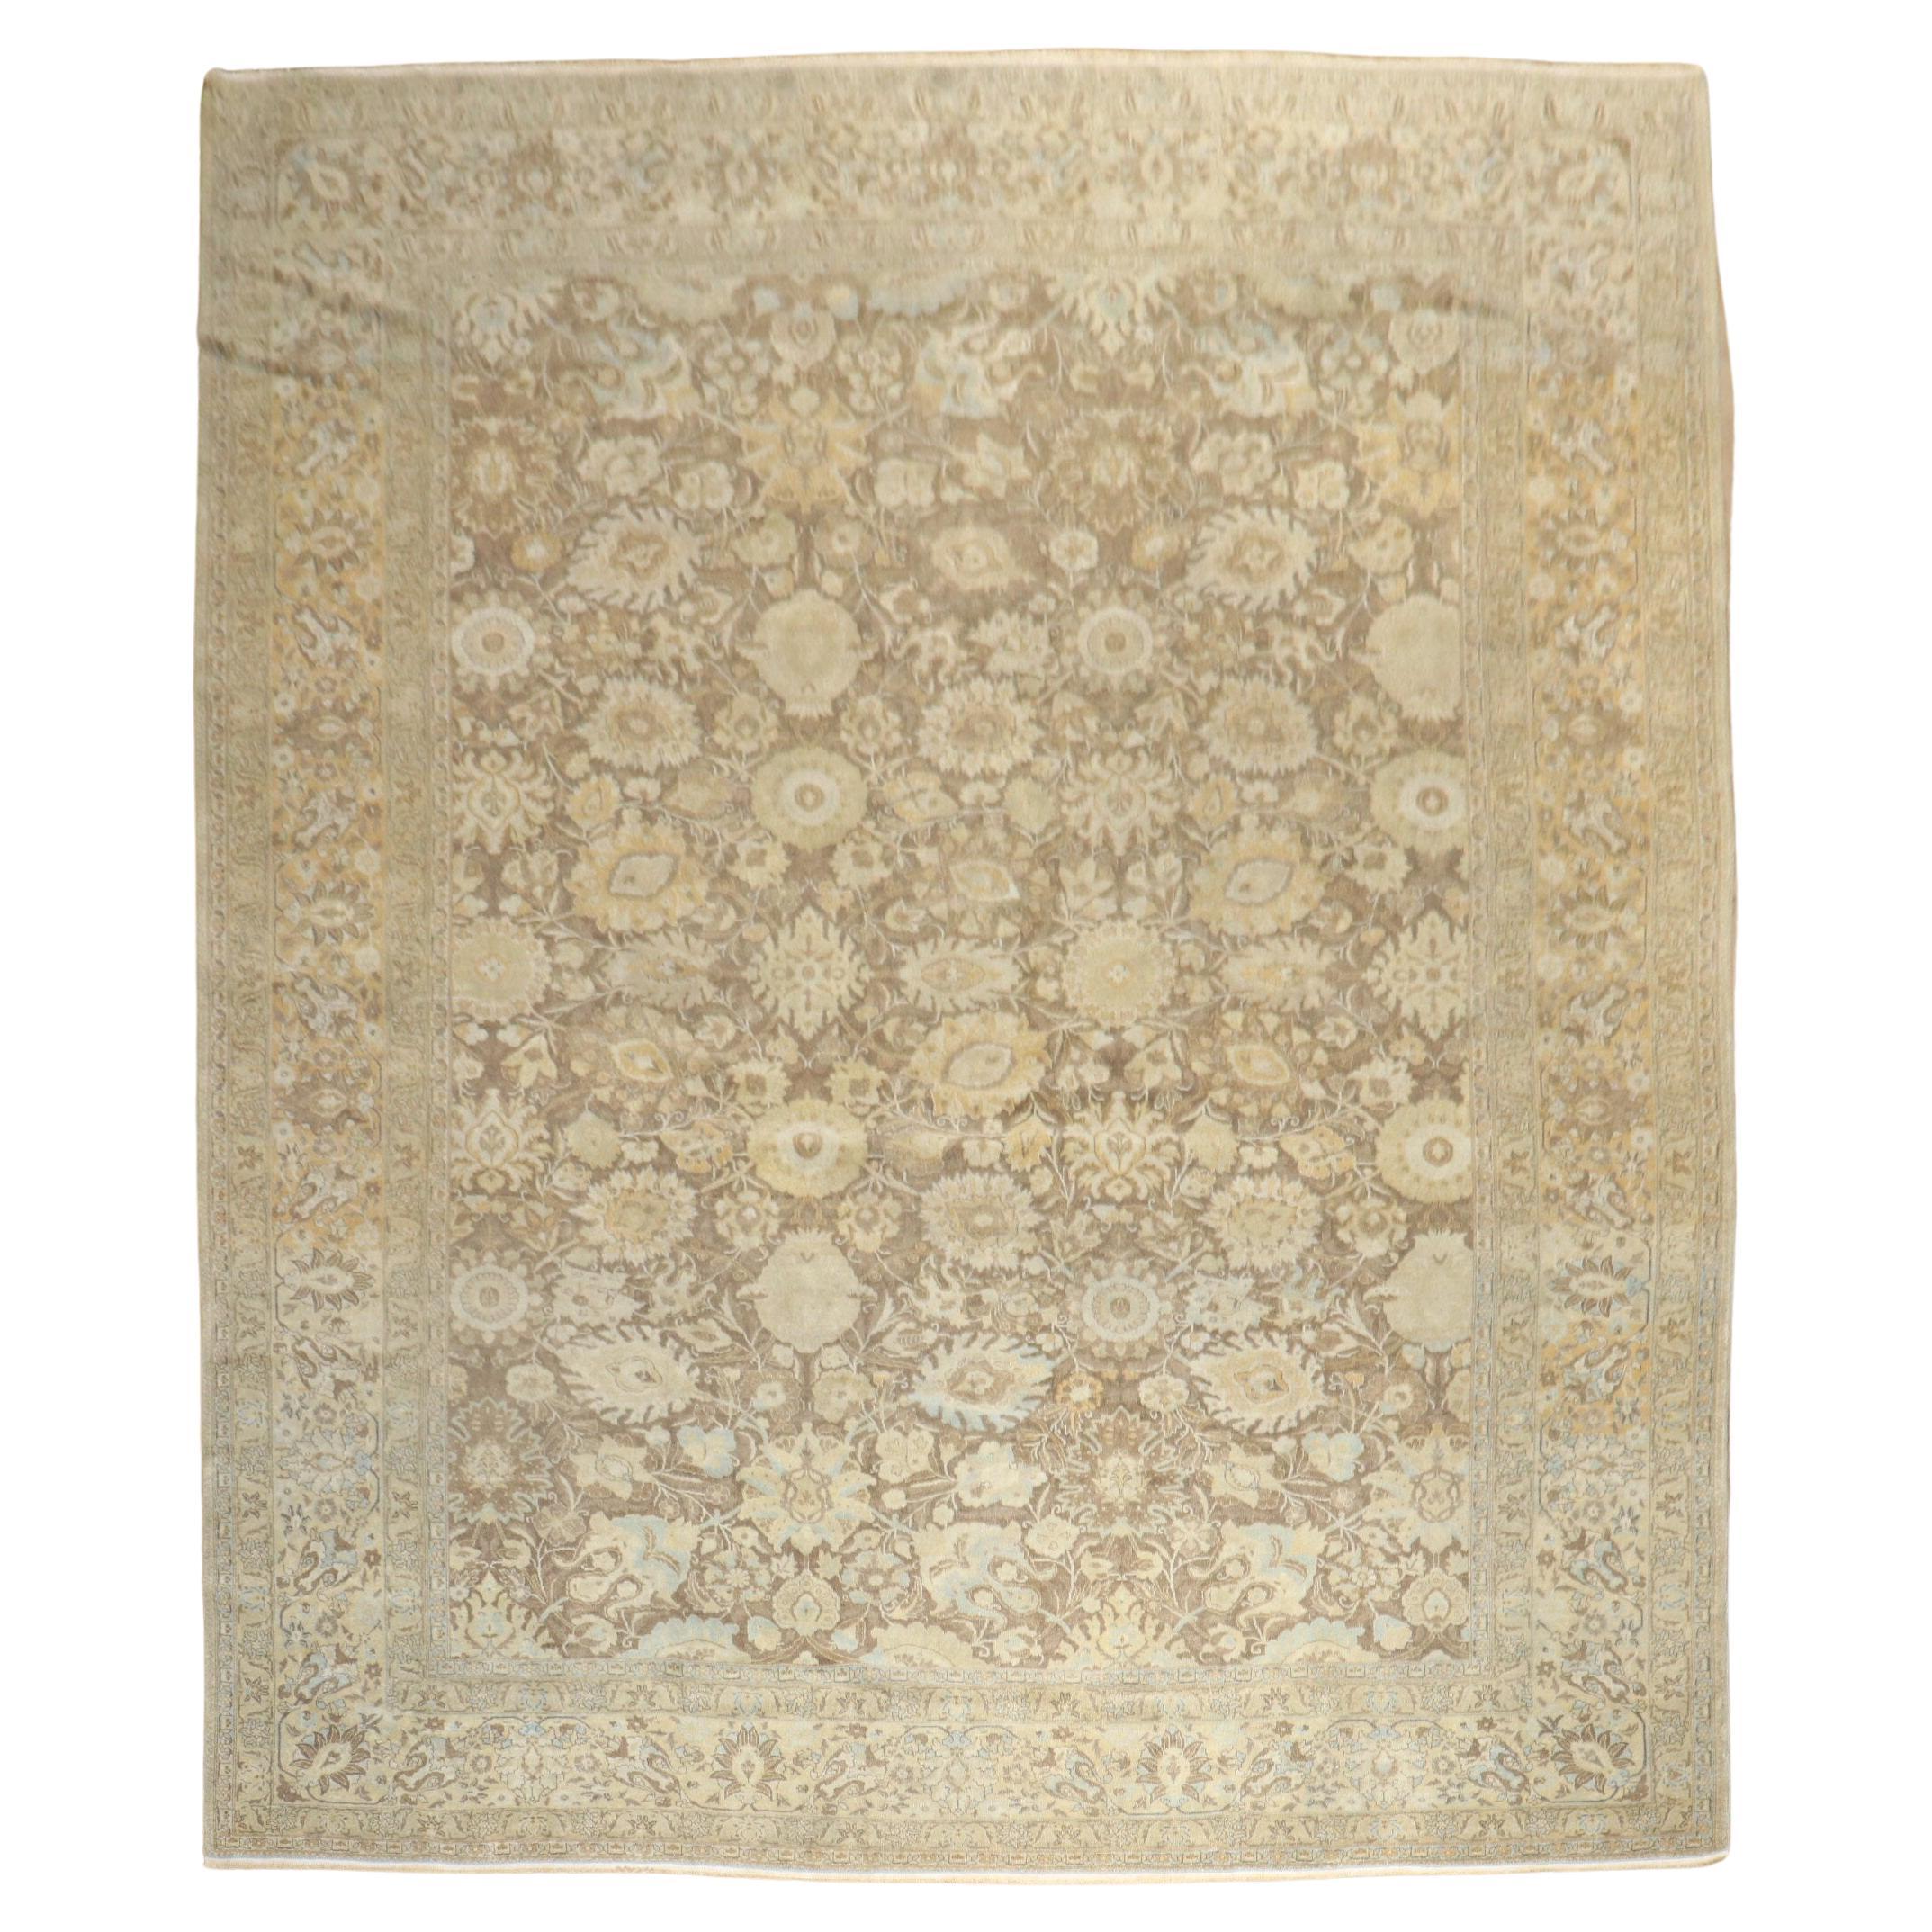 Antiker persischer Täbris-Teppich aus der Zabihi-Kollektion